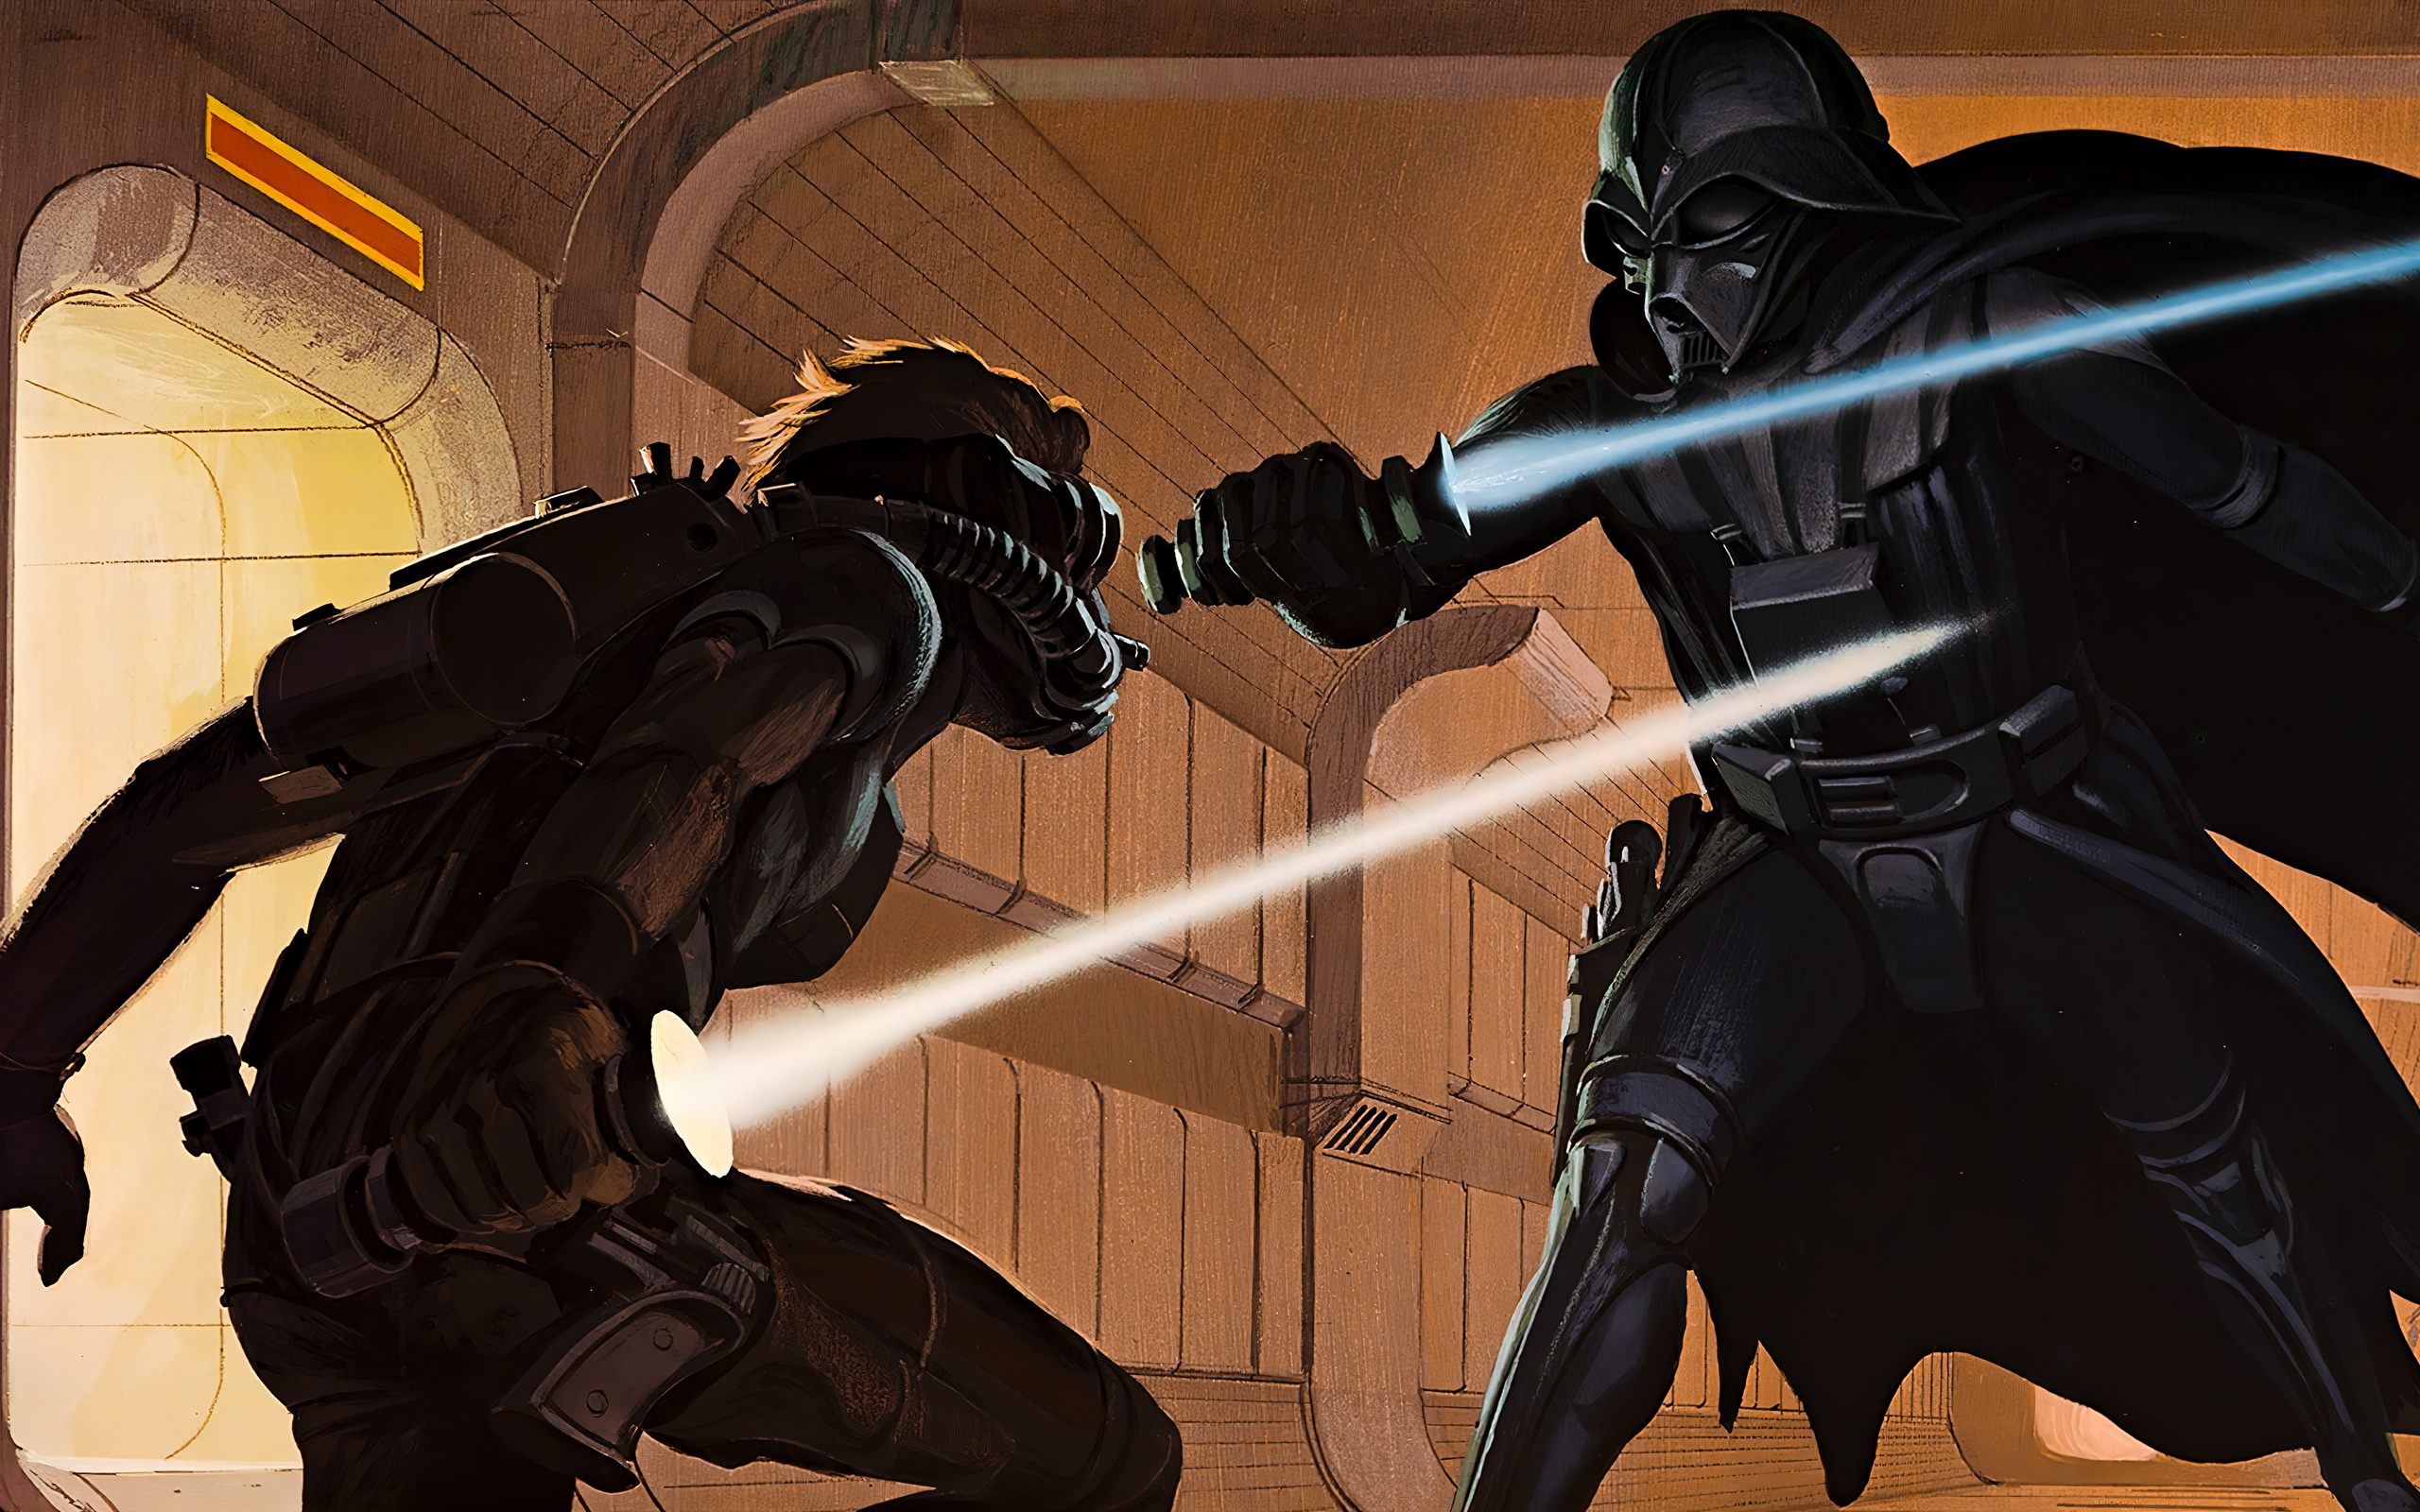 Luke vs Darth Vader by Ralph McQuarrie [3840x2160]